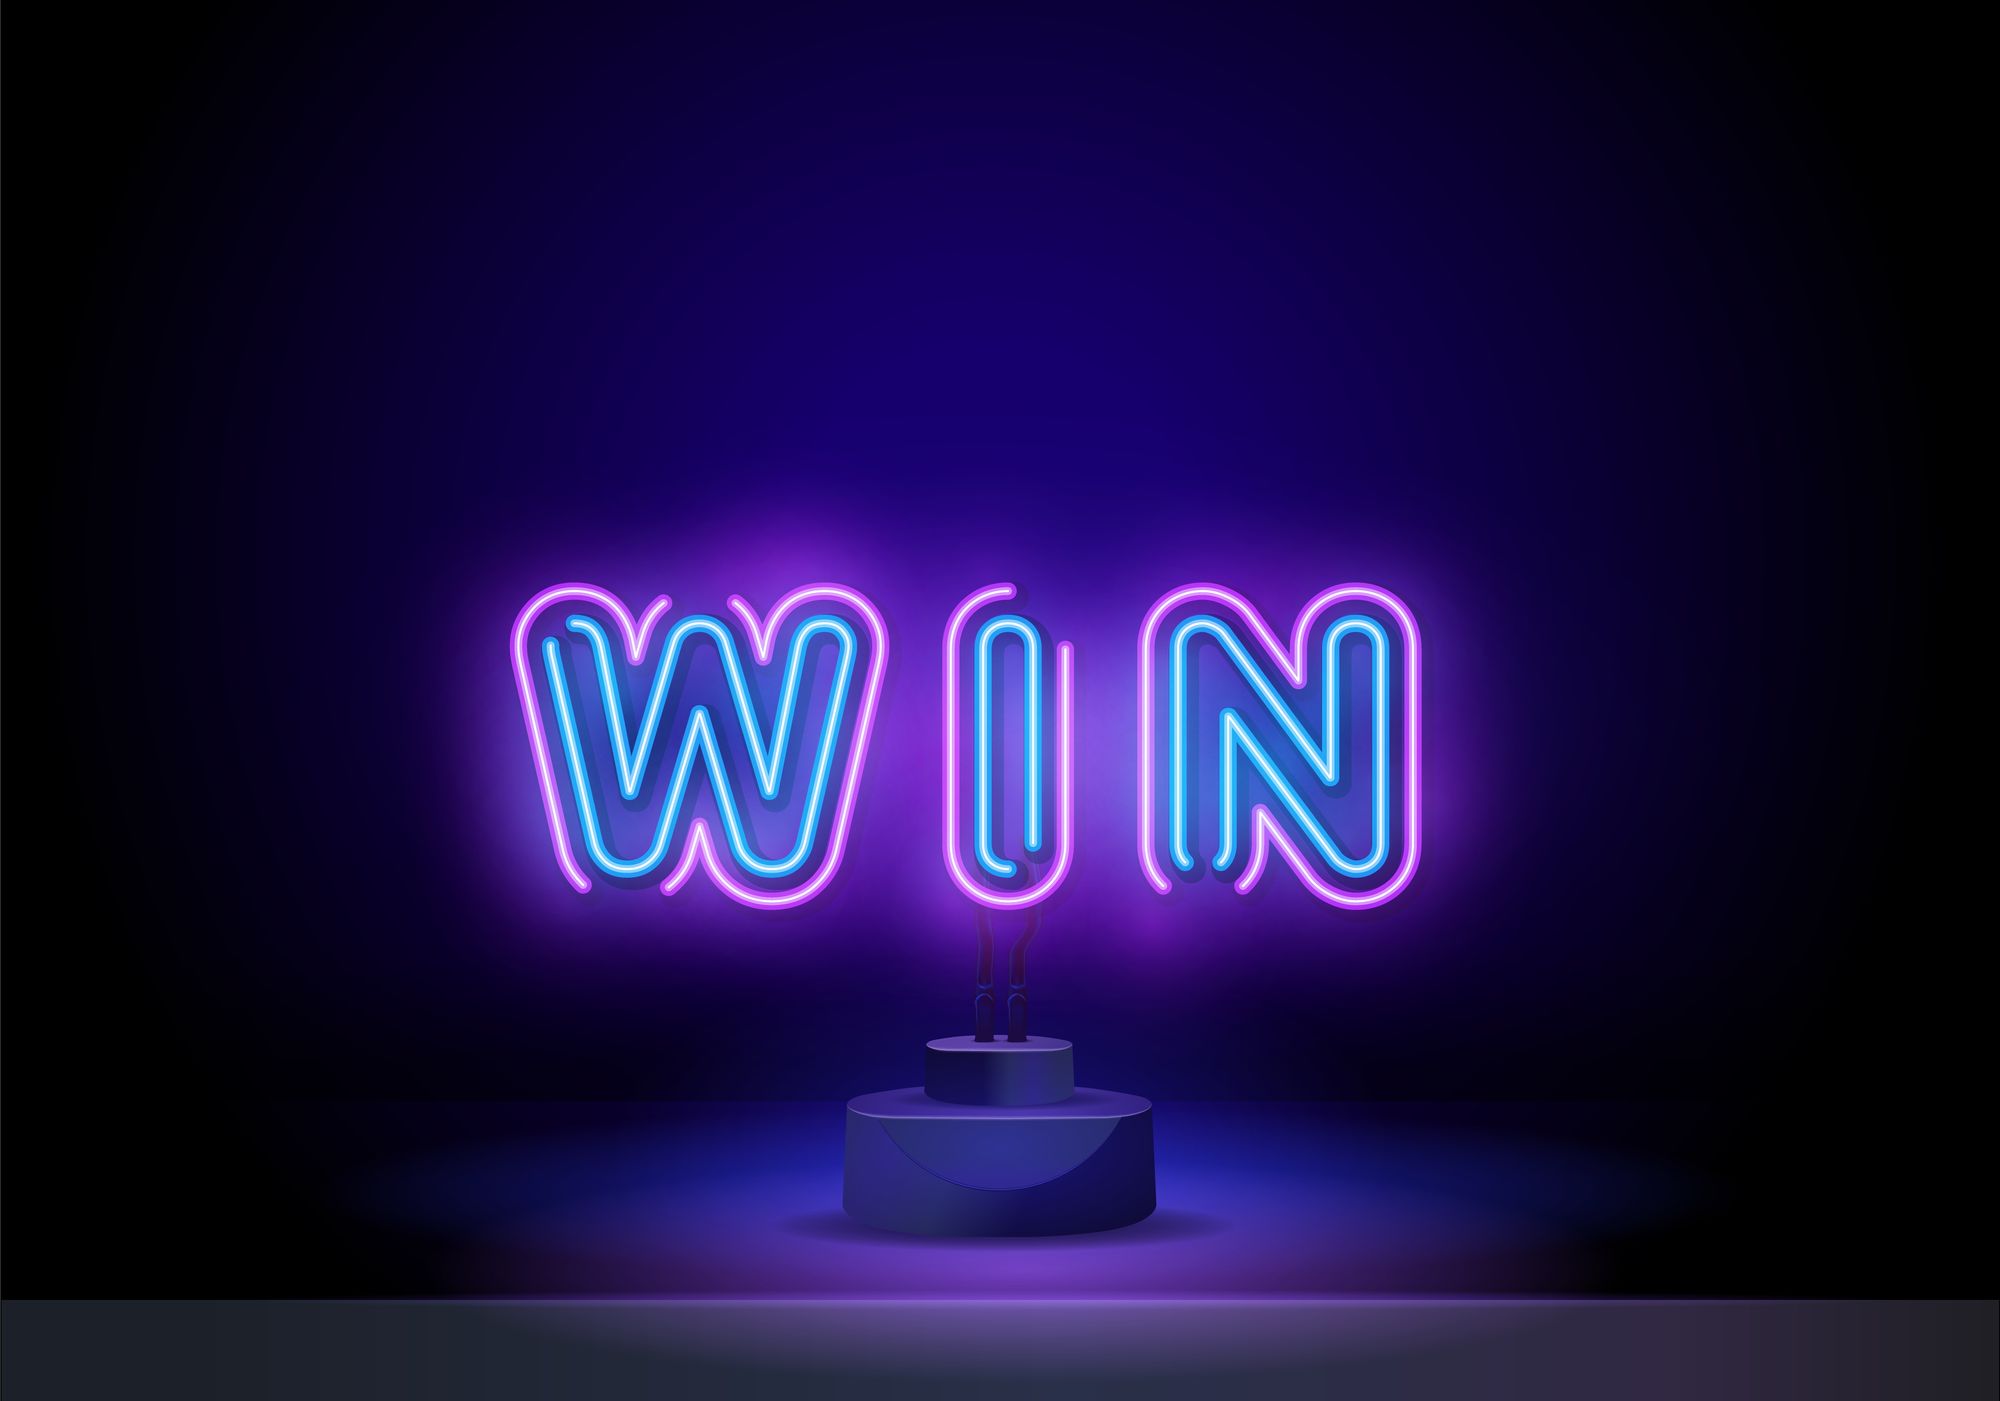 Neonwin казахстан neonwincasino buzz. Win неон. You win Neon. 1win Neon.